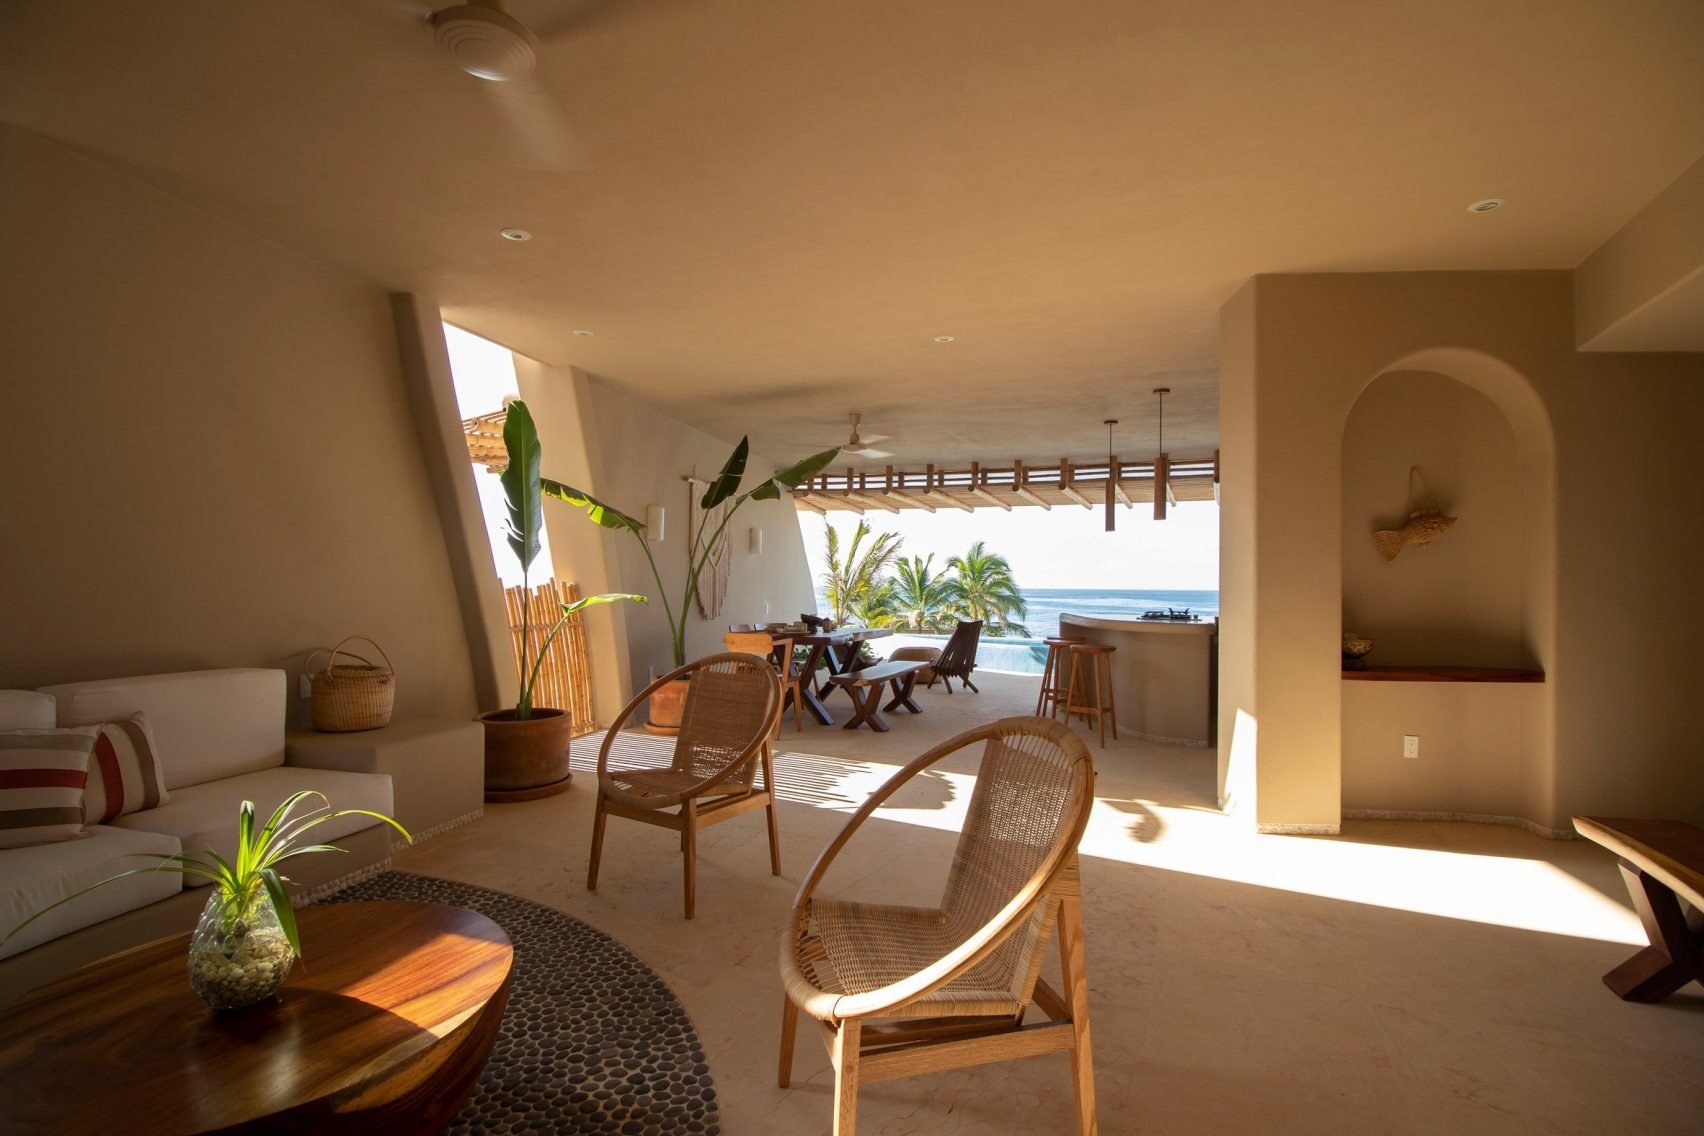 Casa en la playa con interiores de color ocre salon